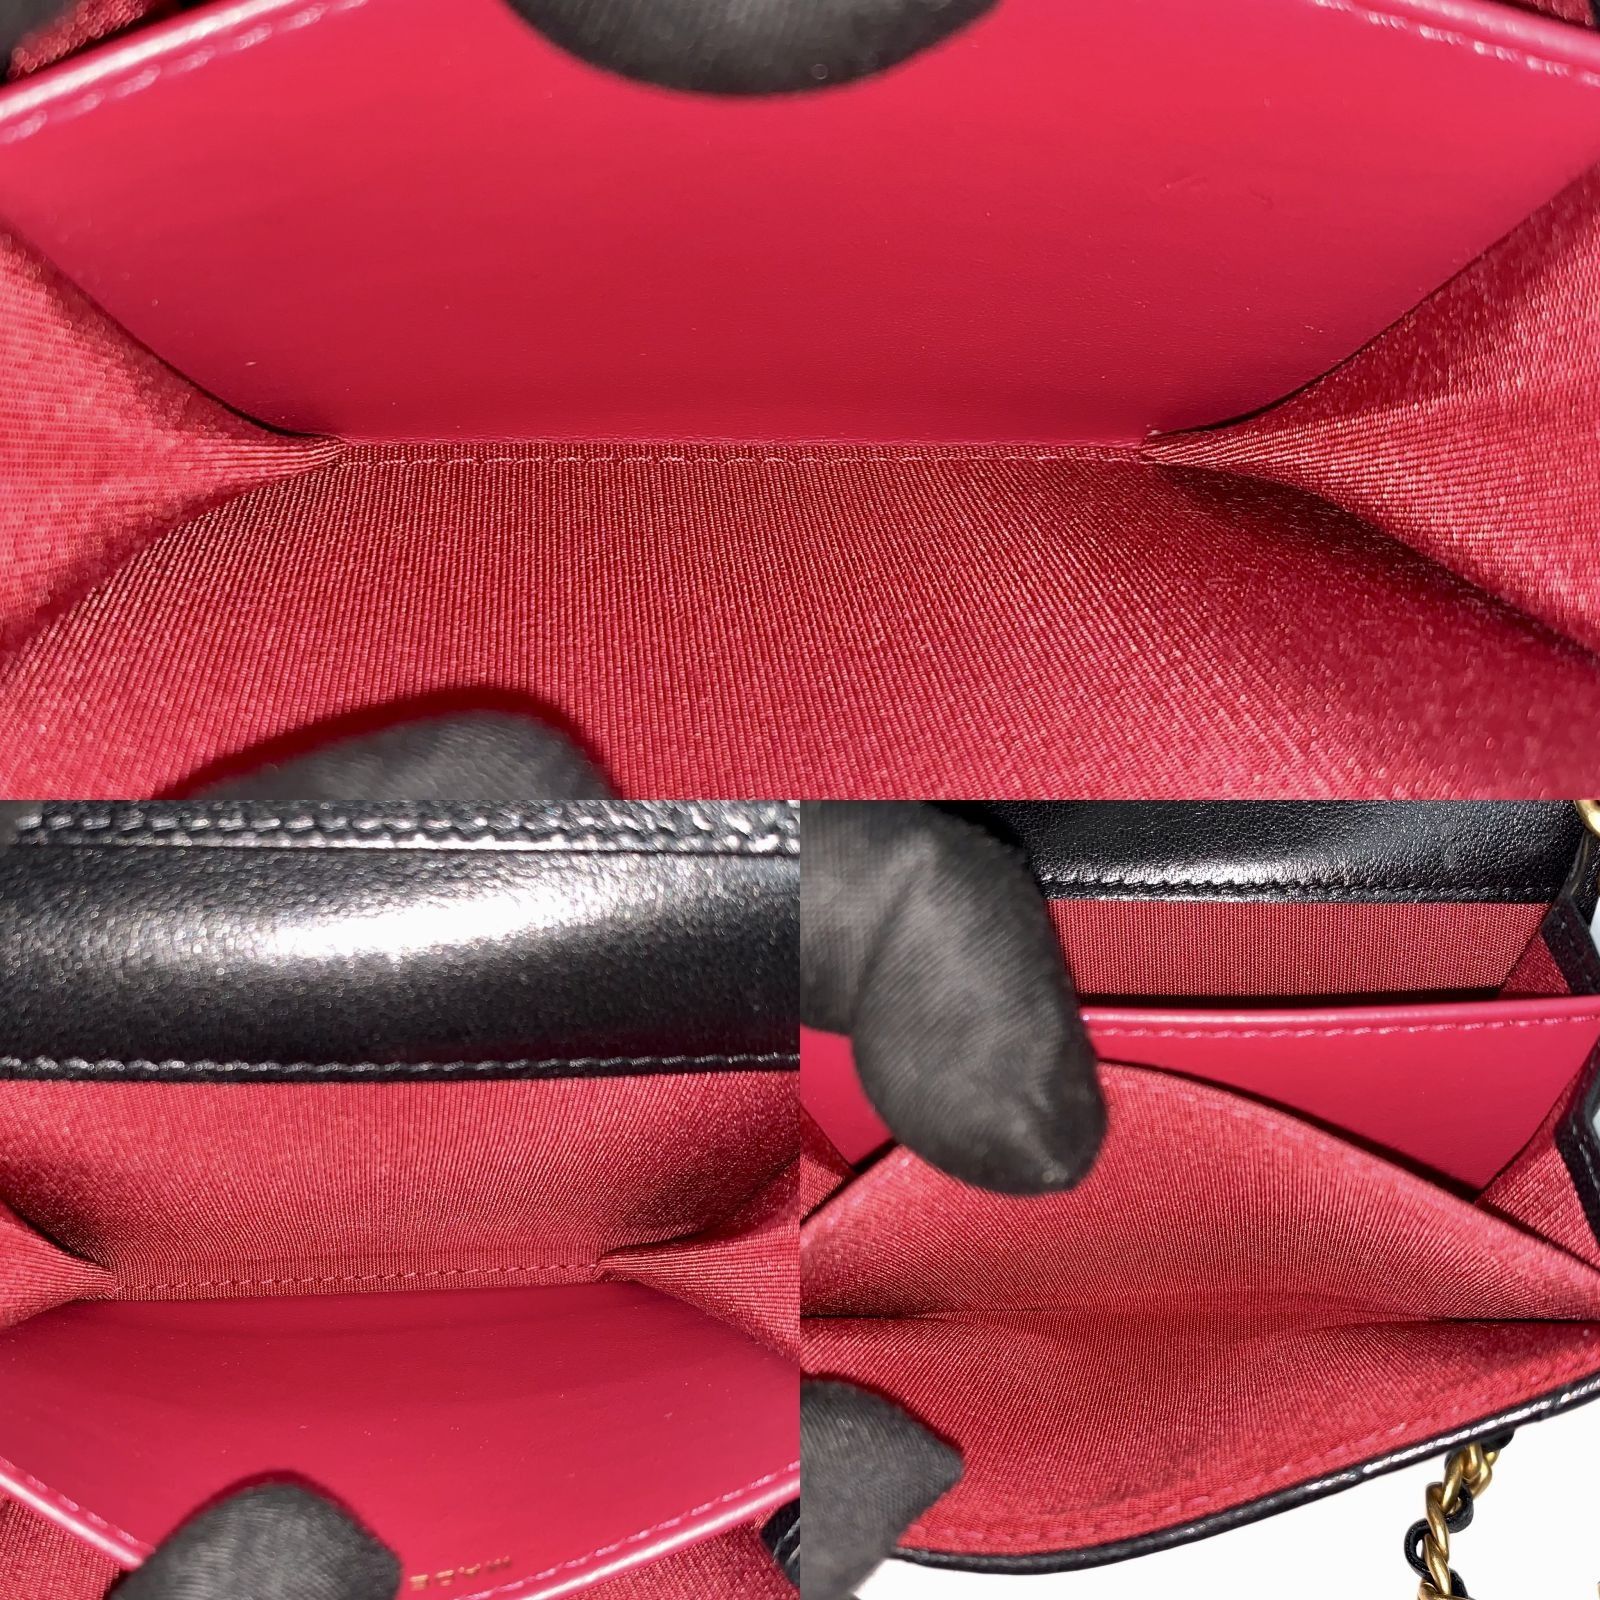 Chanel 19 Flap Coin Purse w/Chain - Black Mini Bags, Handbags - CHA911033